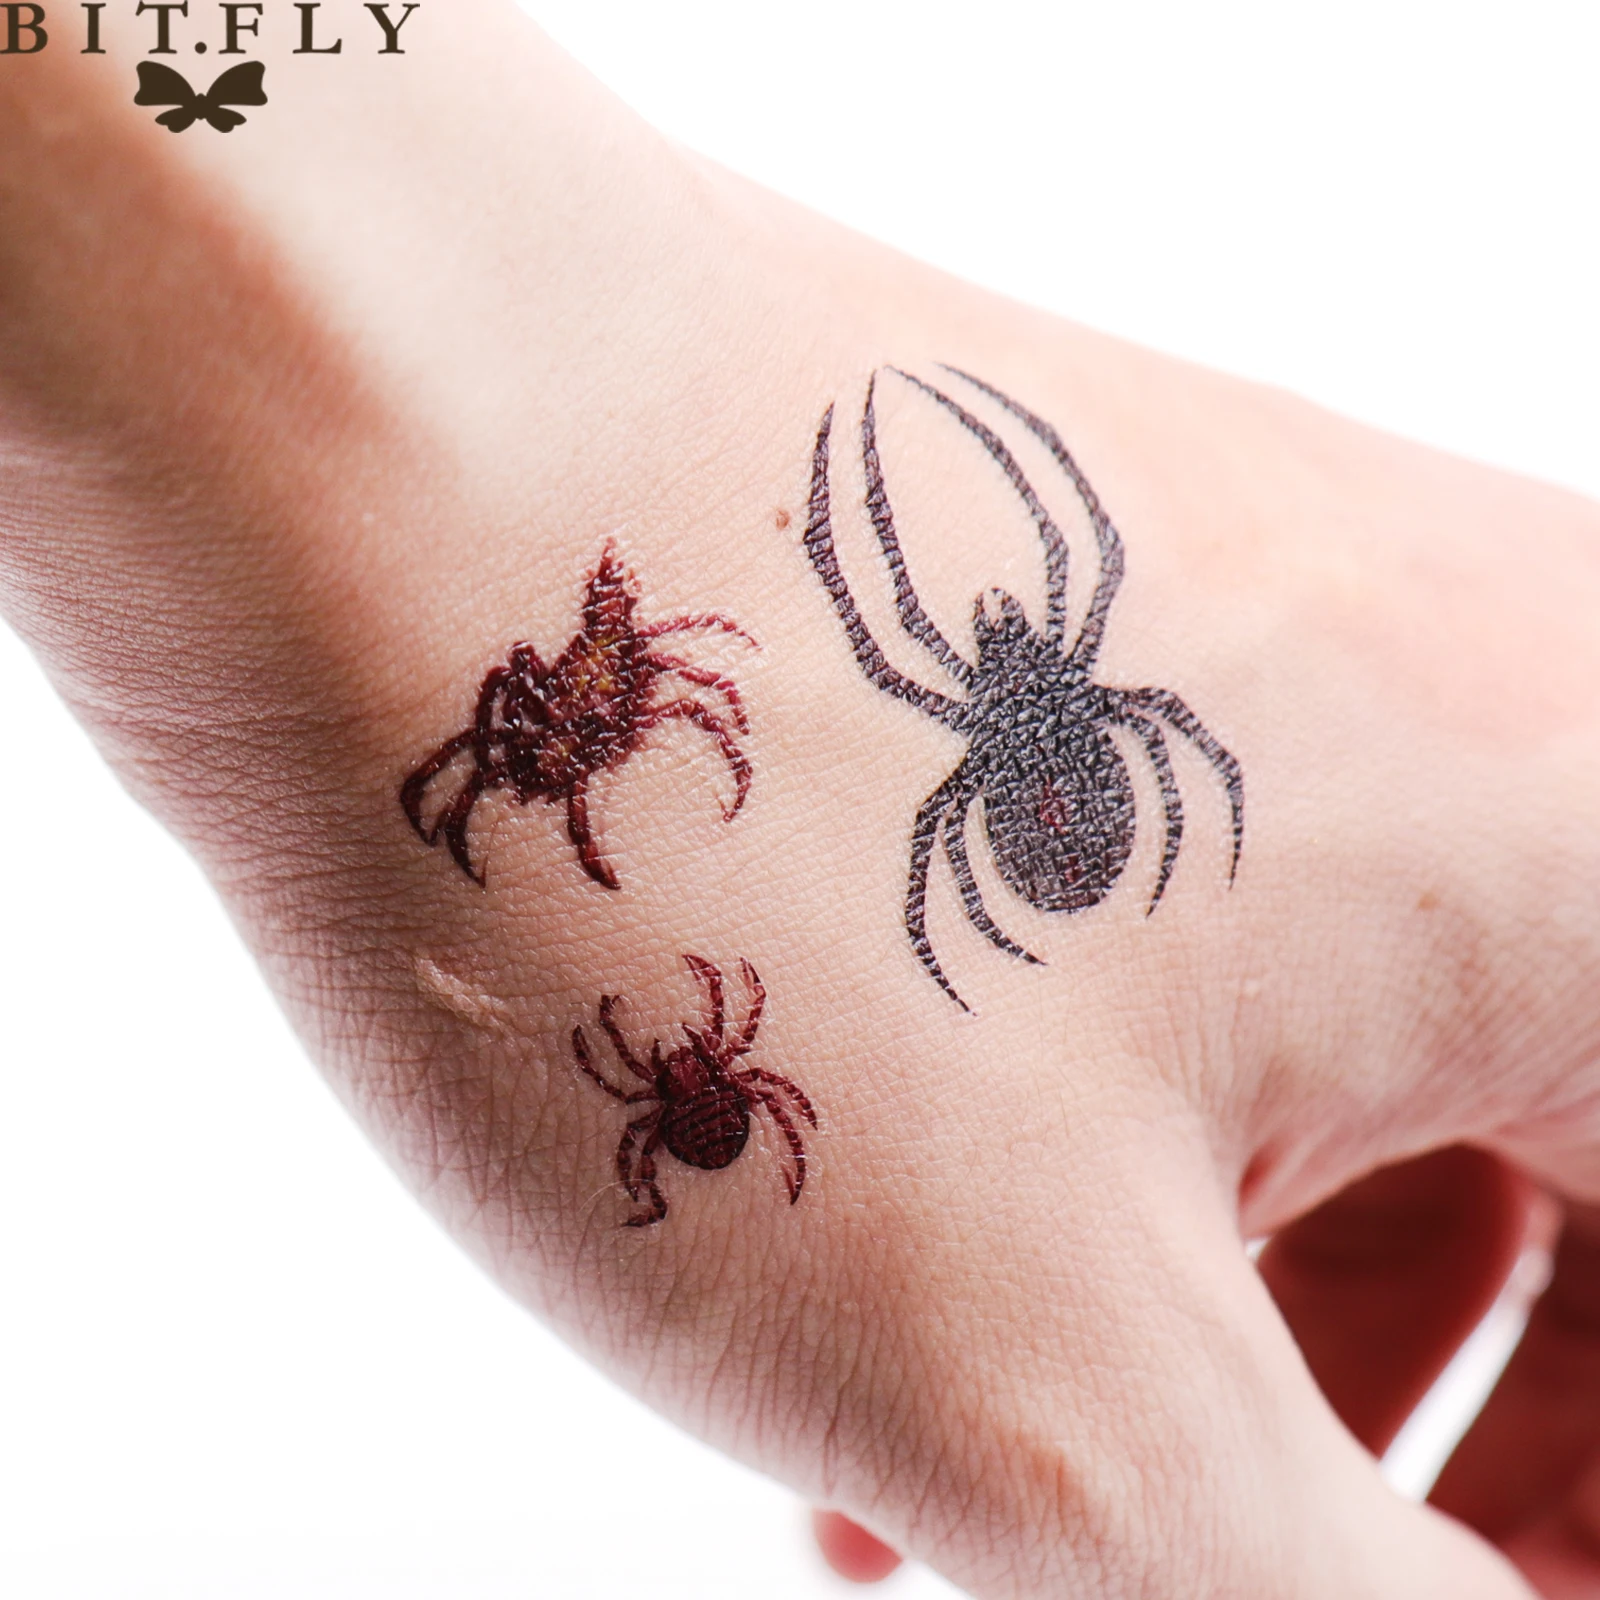 BITFLY 3D водостойкие временные тату-наклейки дизайн черный паук вспышка Временные татуировки Поддельные 1 лист маленькая Шея татуировки тело A